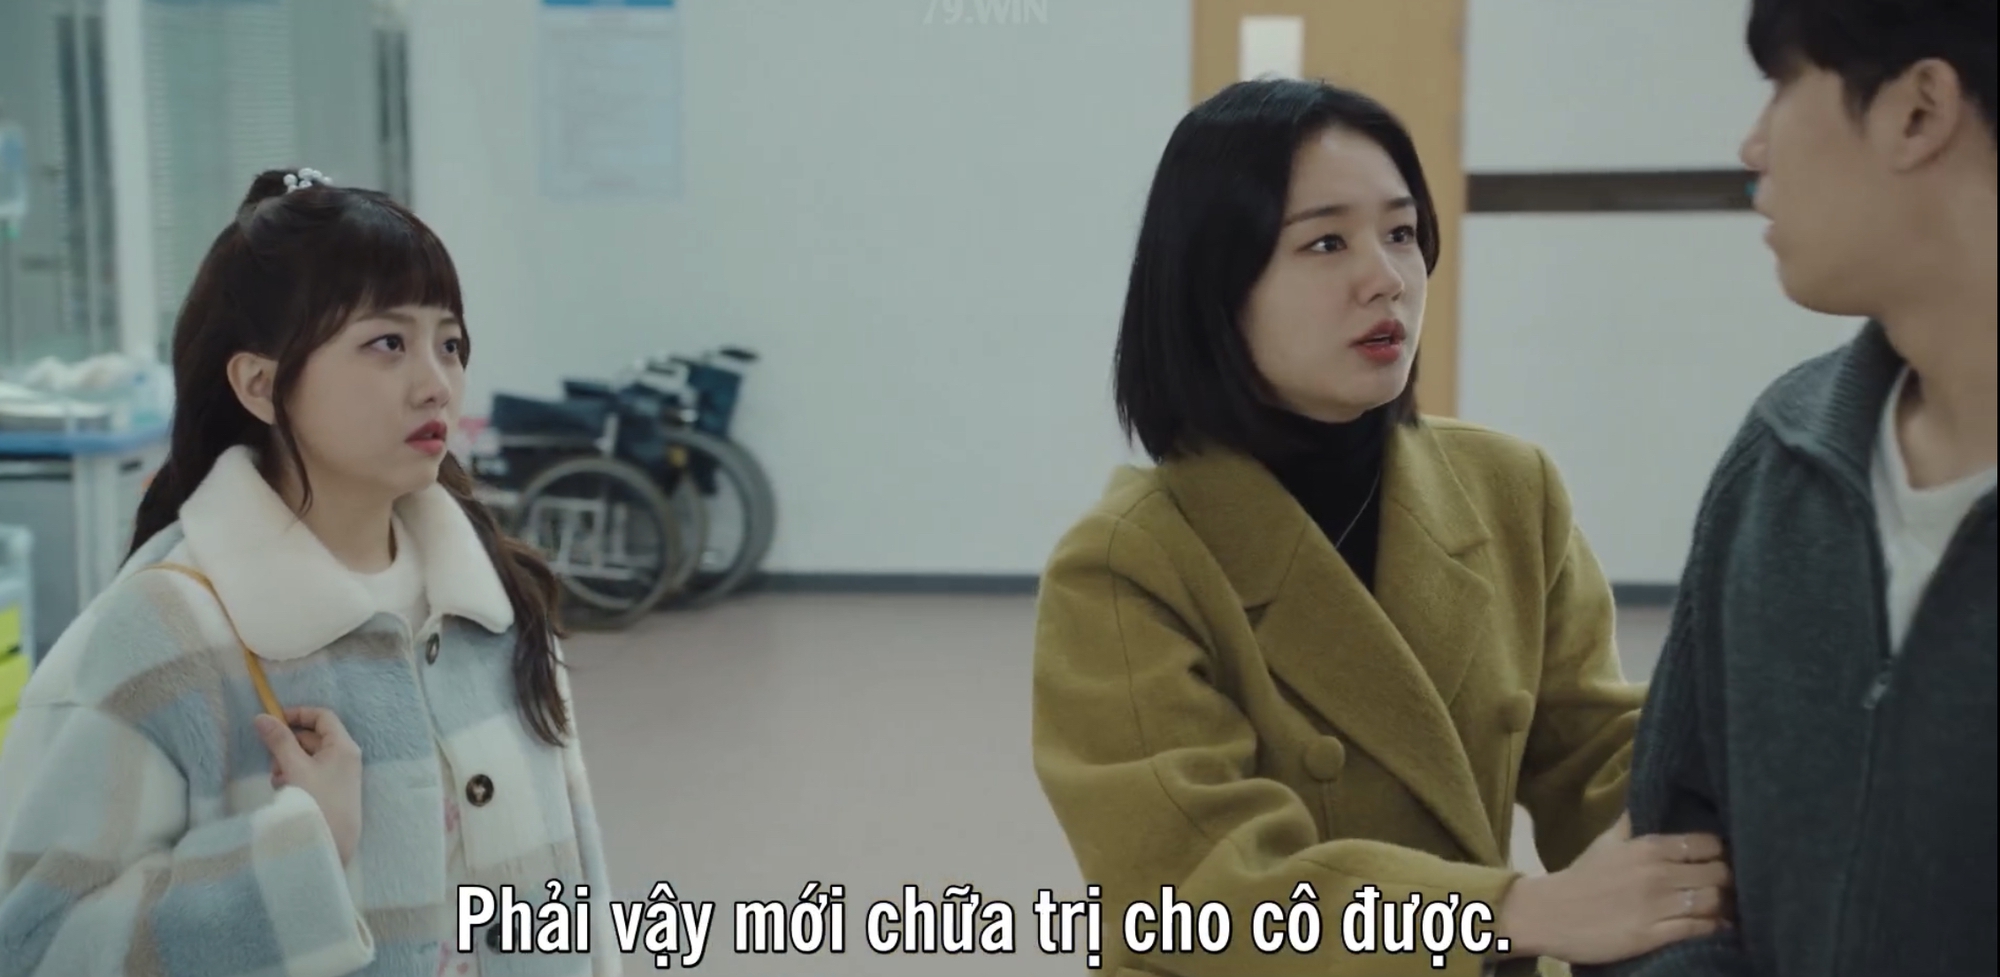 Mỹ nhân đóng cô gái Việt ở phim của Lee Do Hyun xuất hiện vài phút mà đẹp hơn cả nữ chính - Ảnh 6.